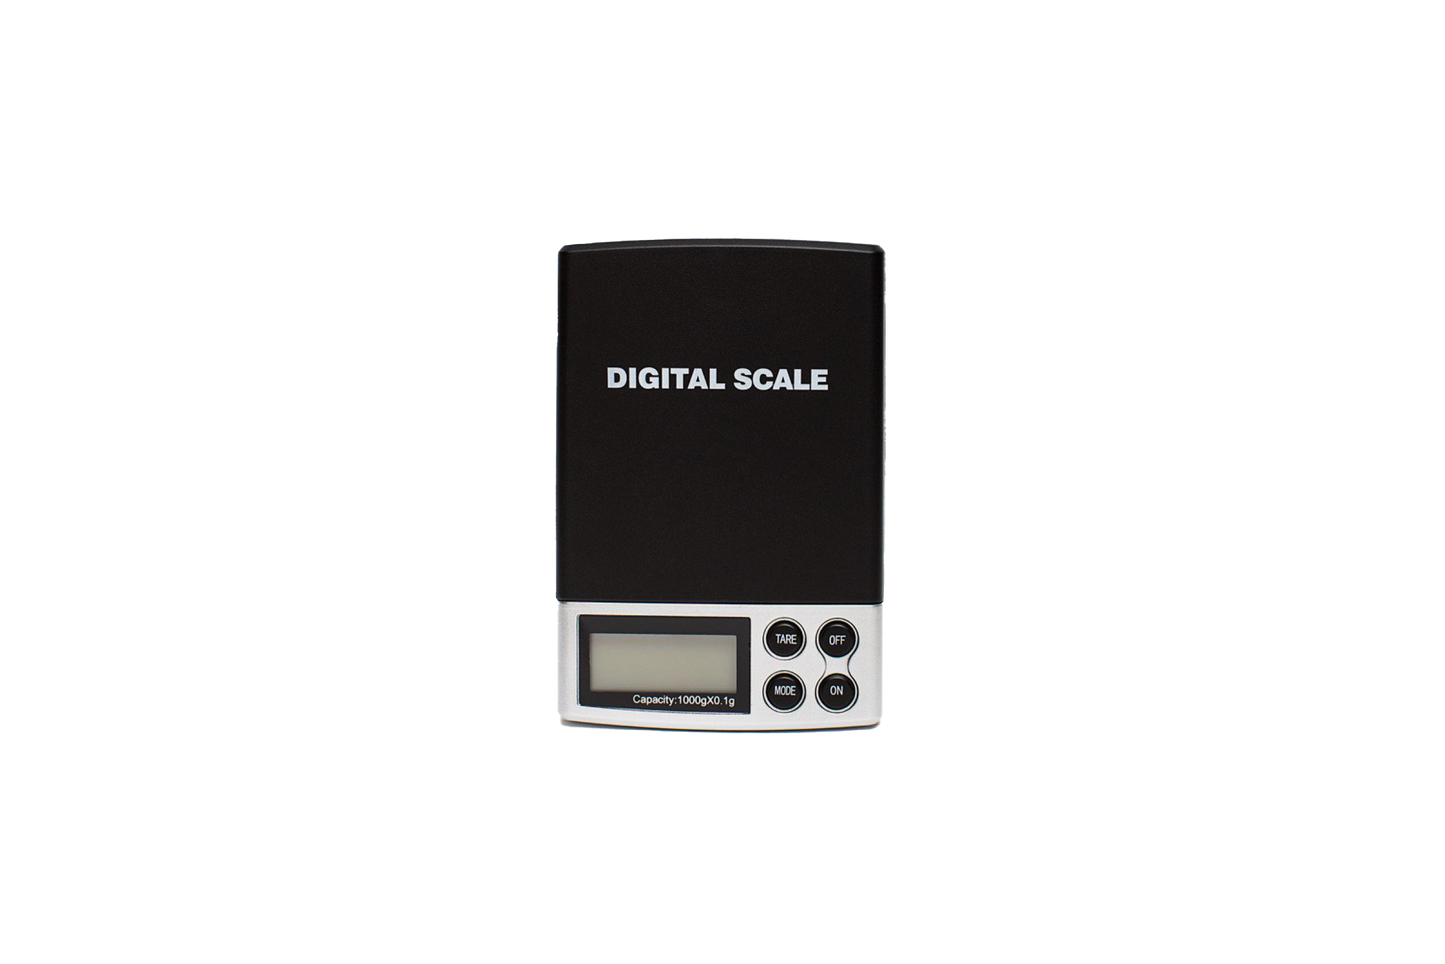 A digital mini scale, accurate to 0.1g.